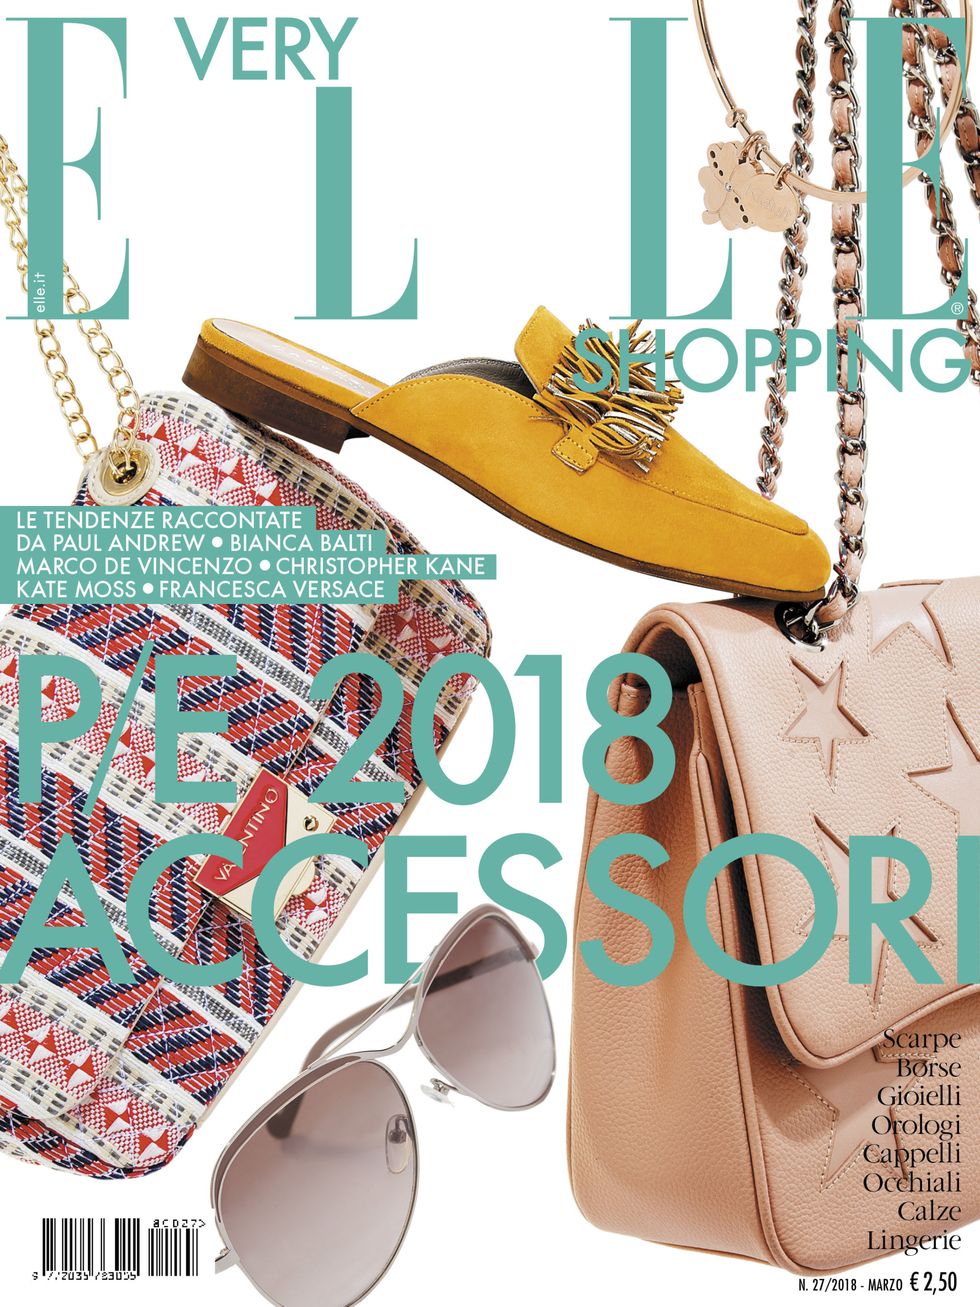 <p>La copertina del nuovo numero di Very Elle Shopping, in edicola dal 16 febbraio</p>